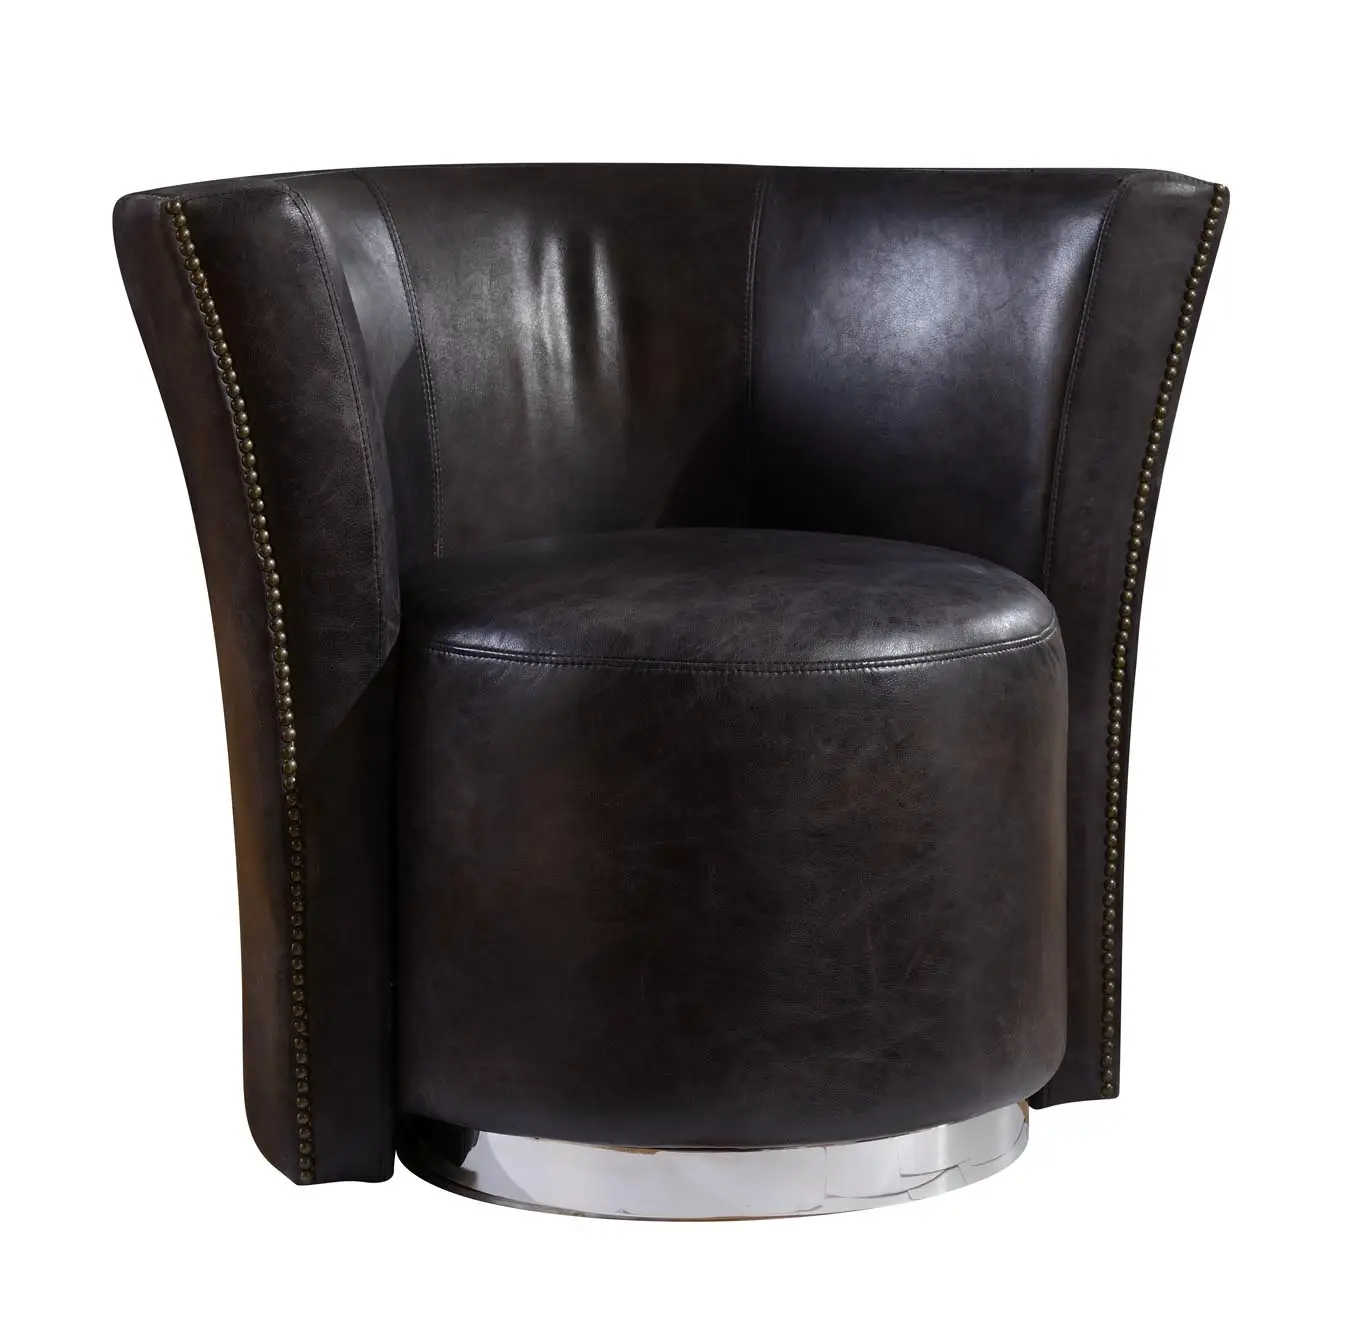 Stile inglese antico classico americano poltrone vintage in pelle invecchiata accento sedie girevoli di lusso unico club poltrona